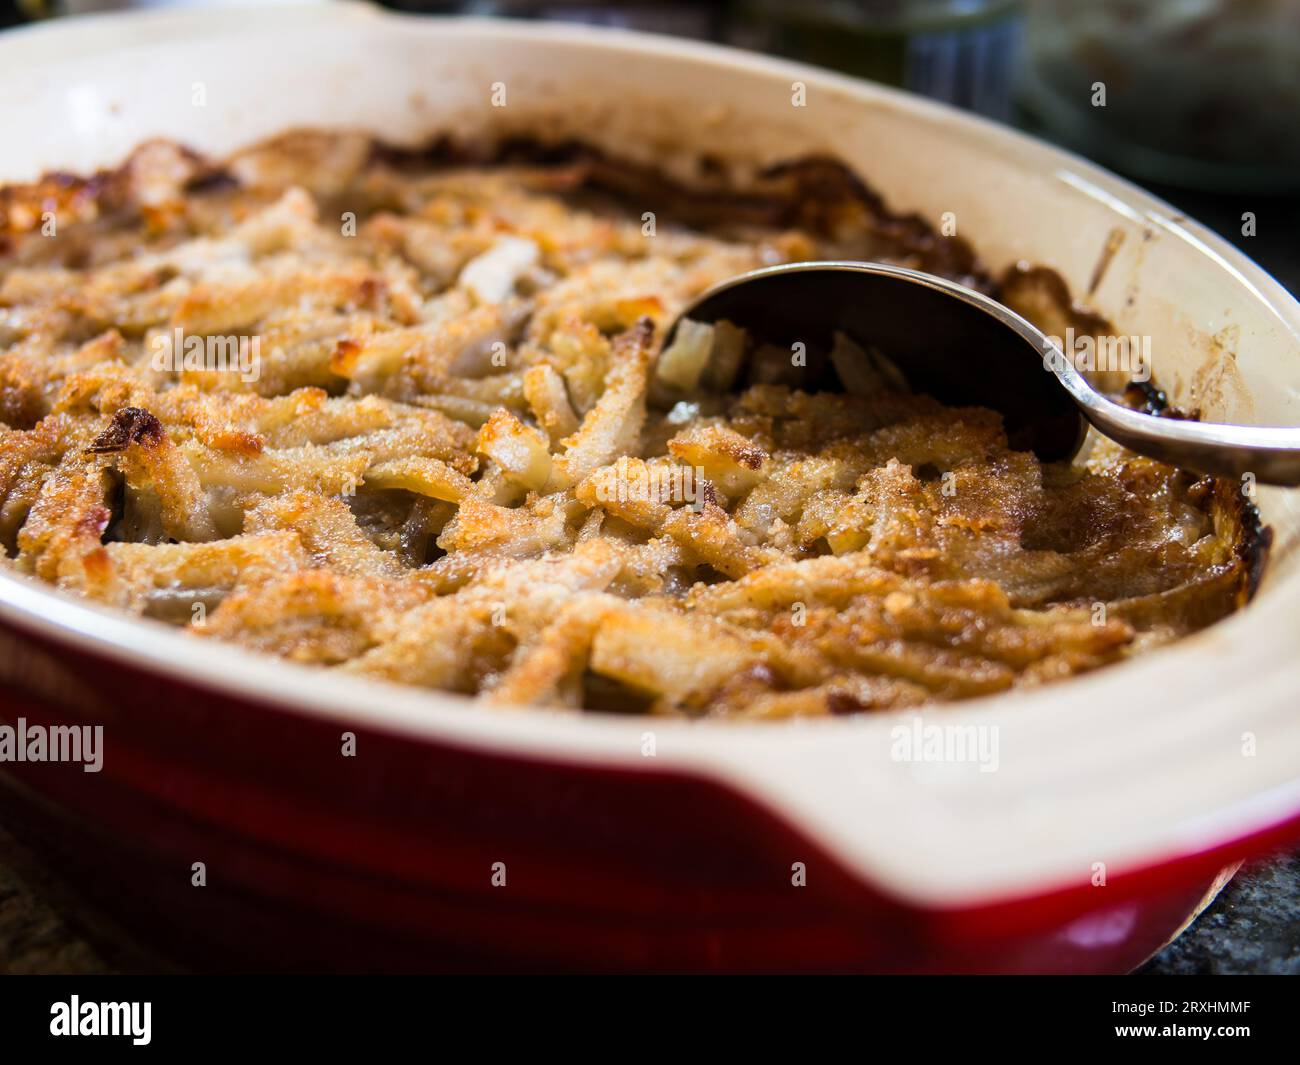 Traditionelle schwedische Delikatesse, Jansson's Frestelse: Eine Auflaufform aus Kartoffeln, Zwiebeln, Sardellen und reichhaltiger Sahne, die oft zu Weihnachten genossen wird Stockfoto